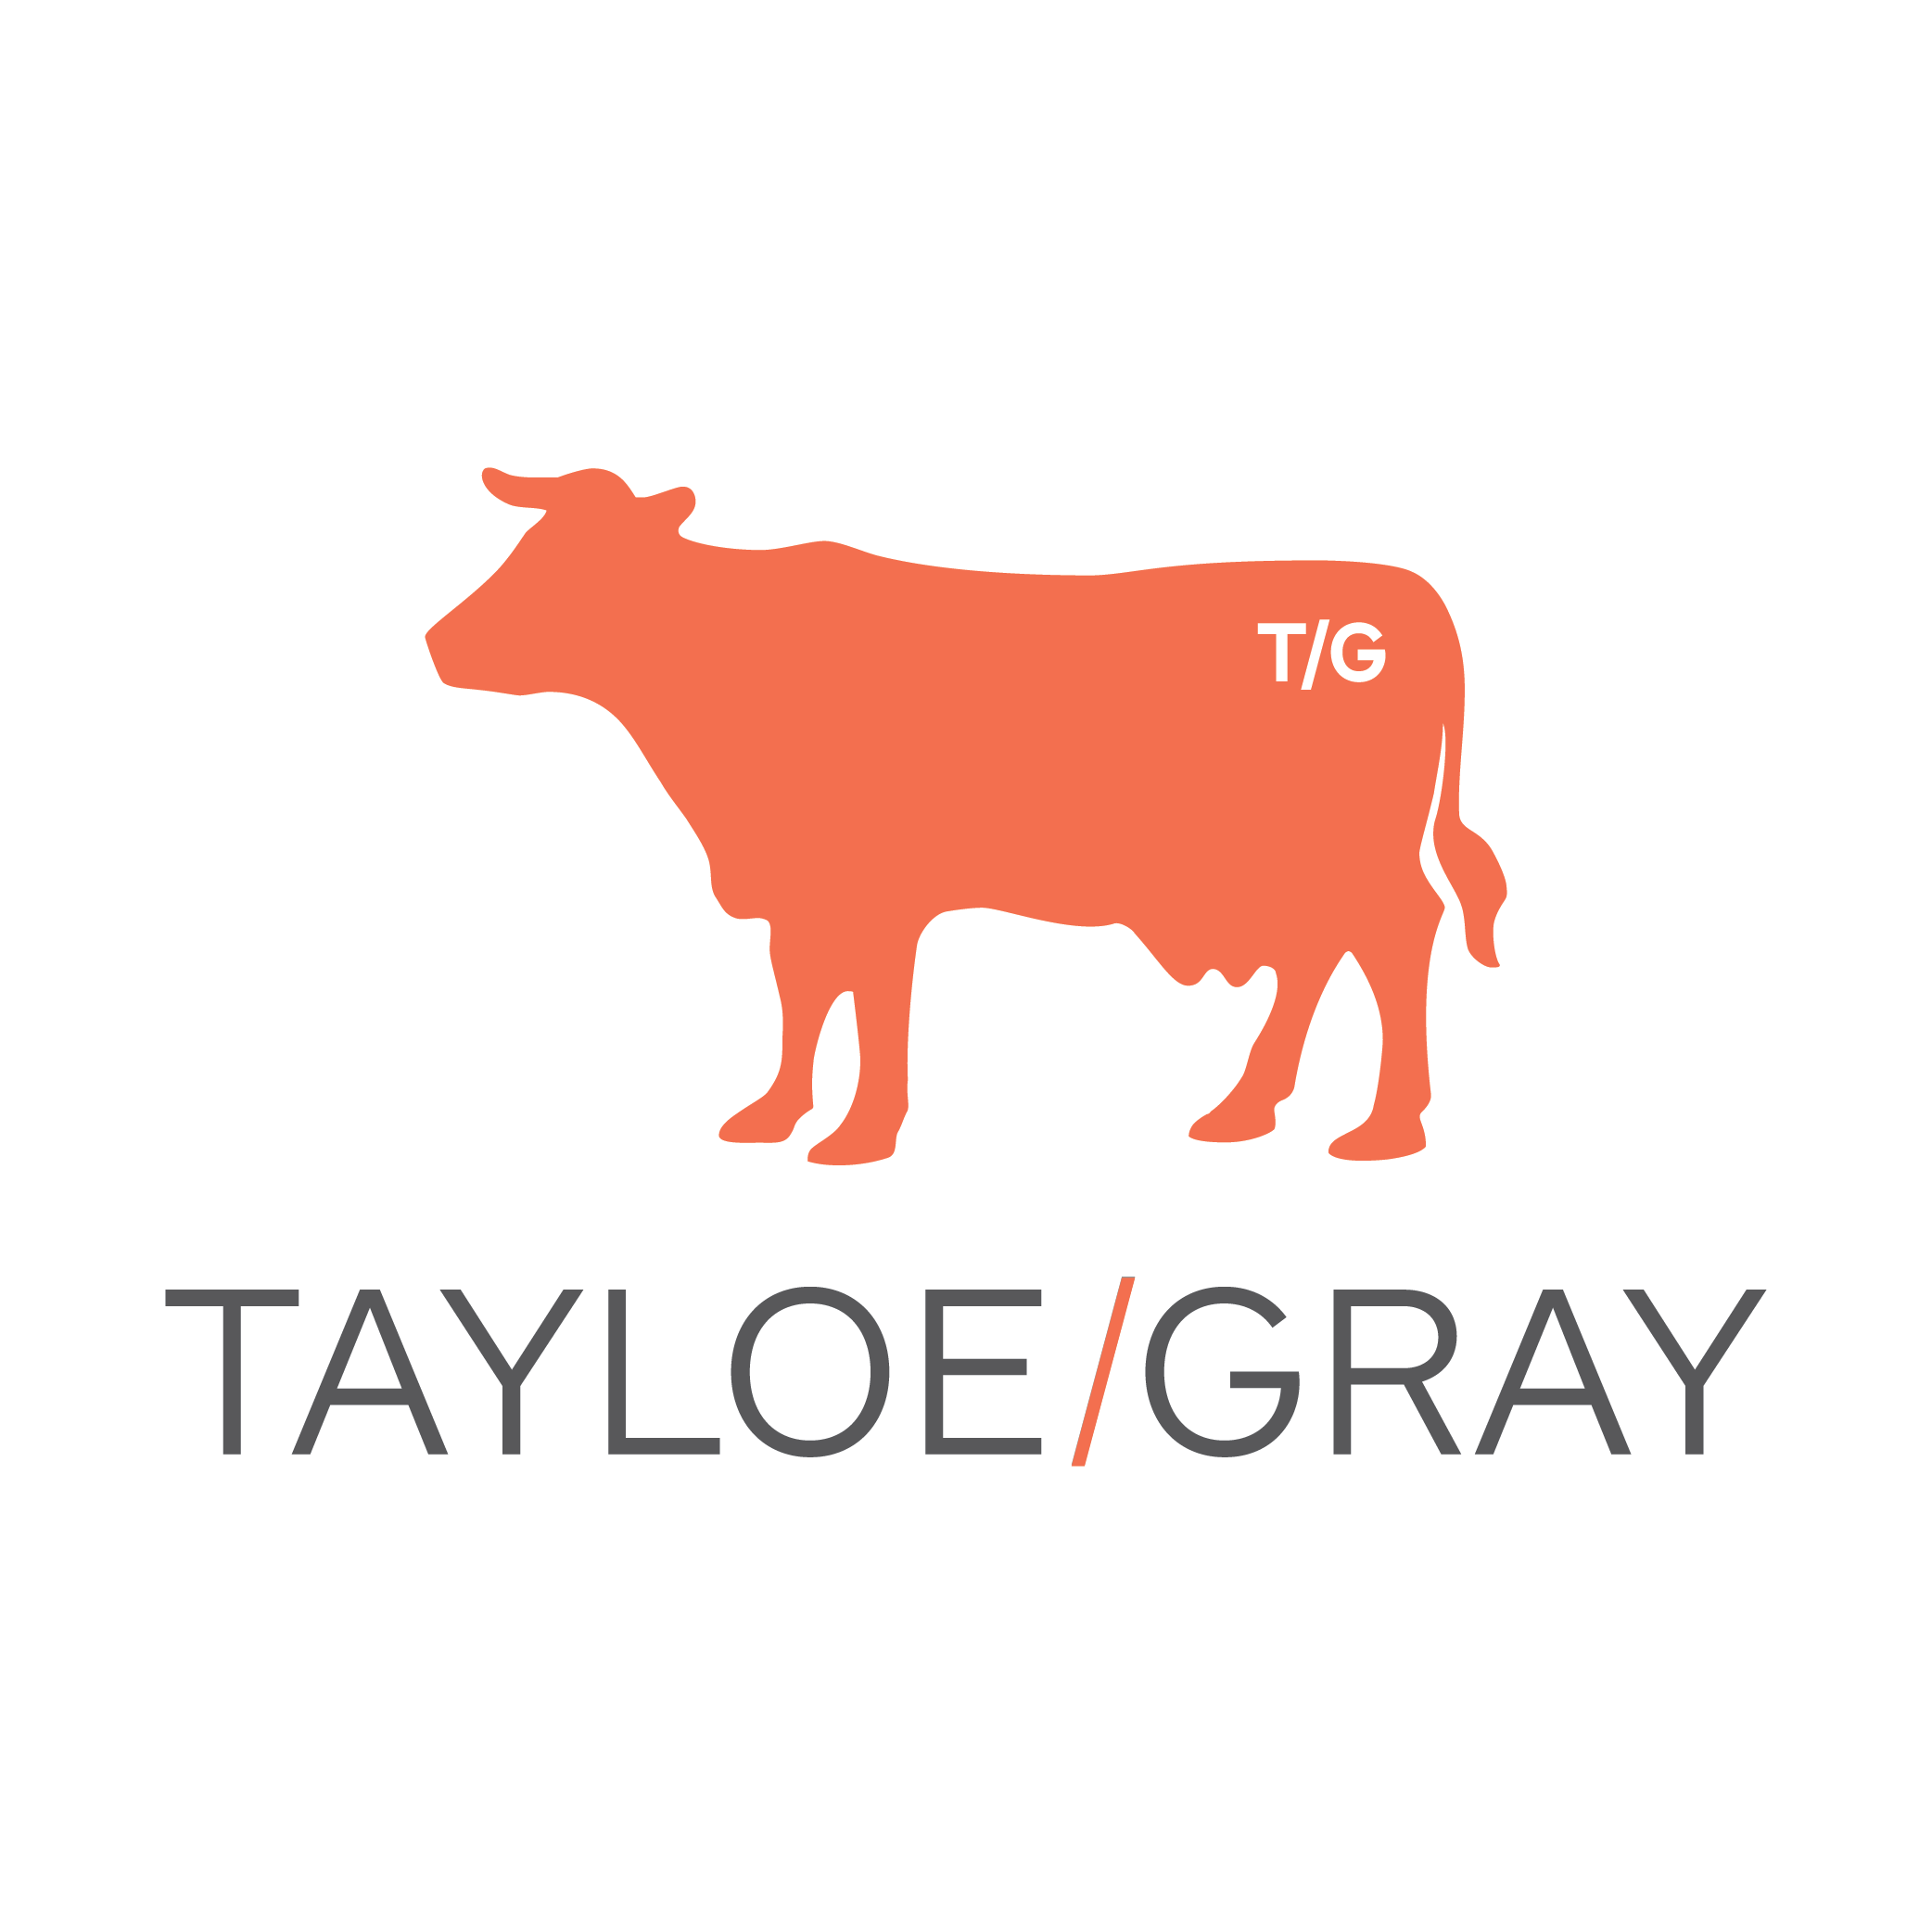 Tayloe/Gray